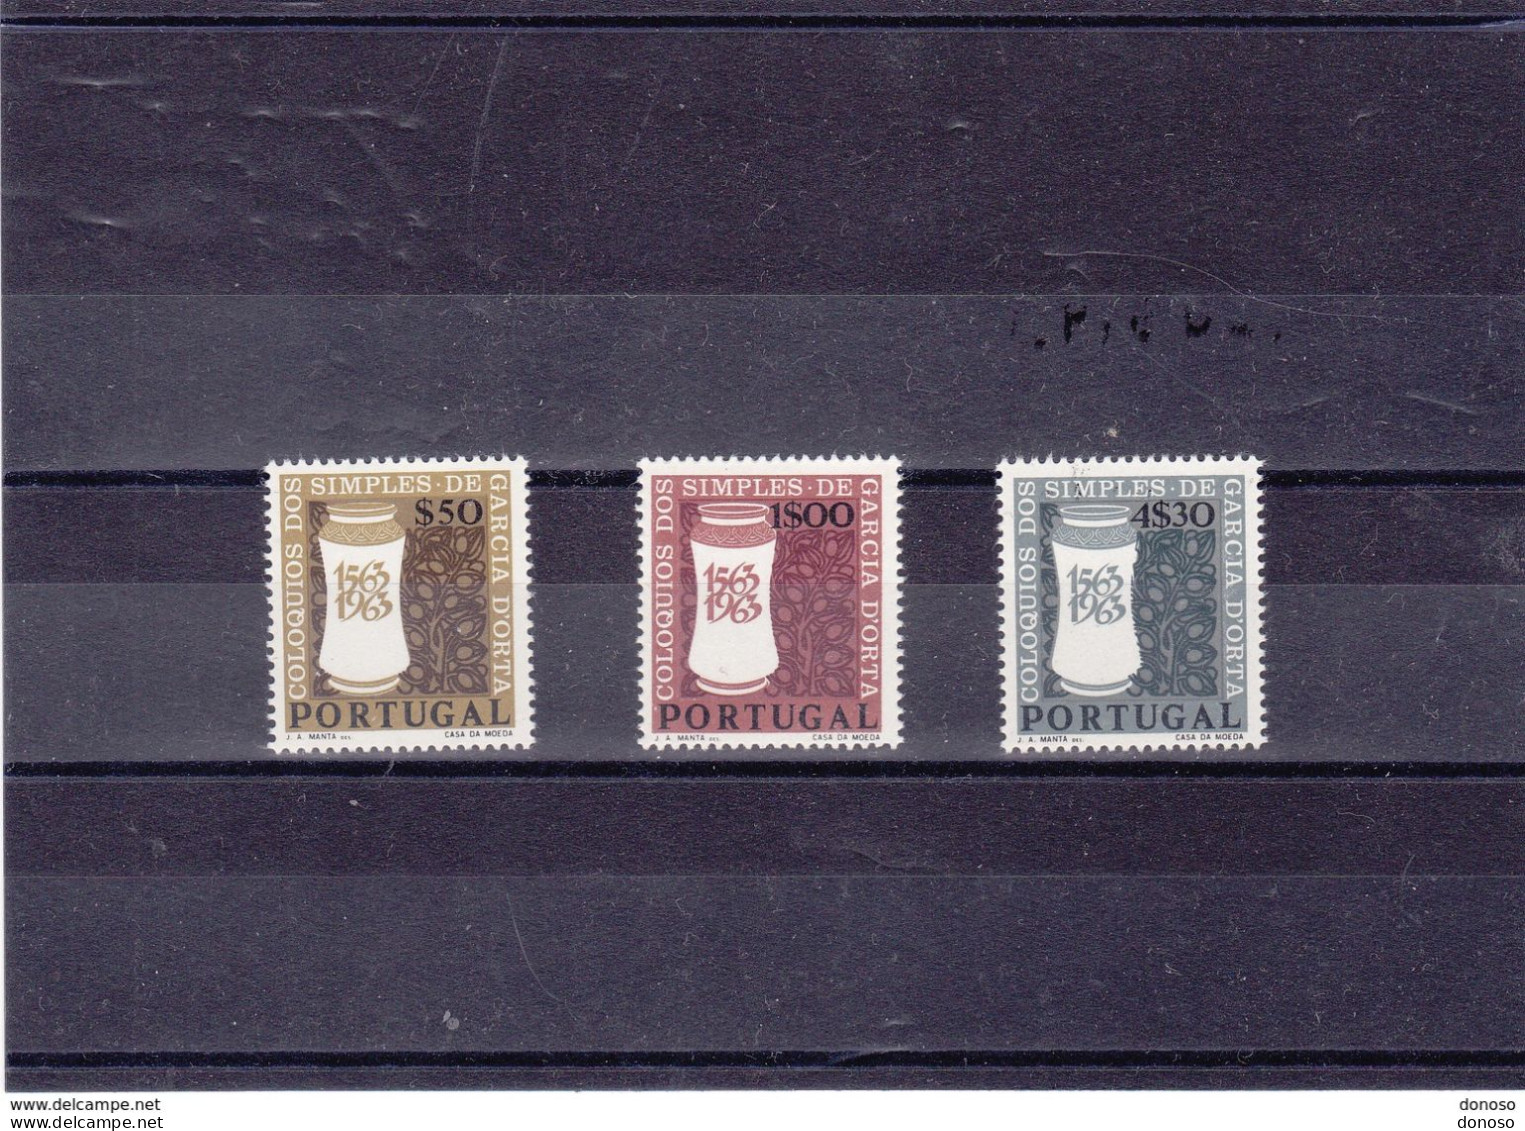 PORTUGAL 1964 Colloque Des Produits Naturels Et Drogues Yvert 935-937, Michel 954-956 NEUF** MNH Cote Yv 6,50 Euros - Unused Stamps